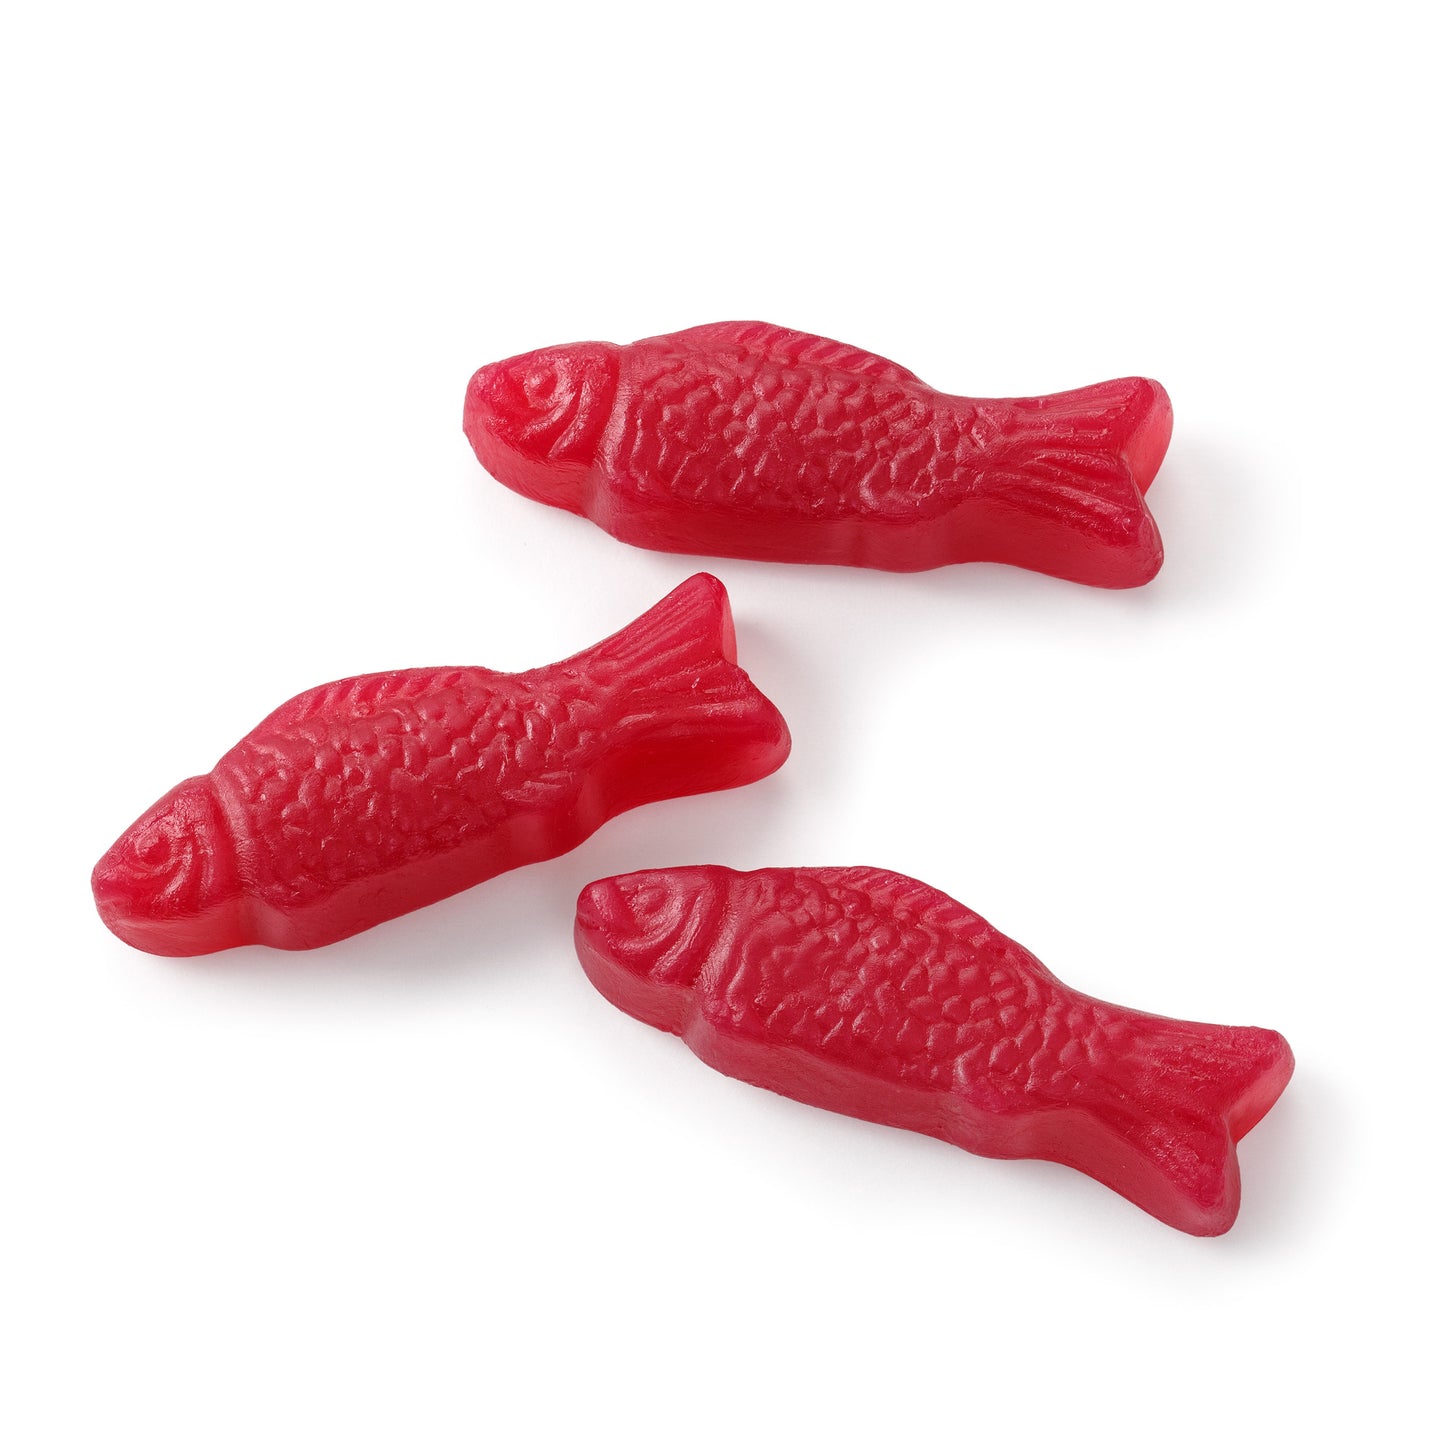 GUMMY FISH (NON-GMO)